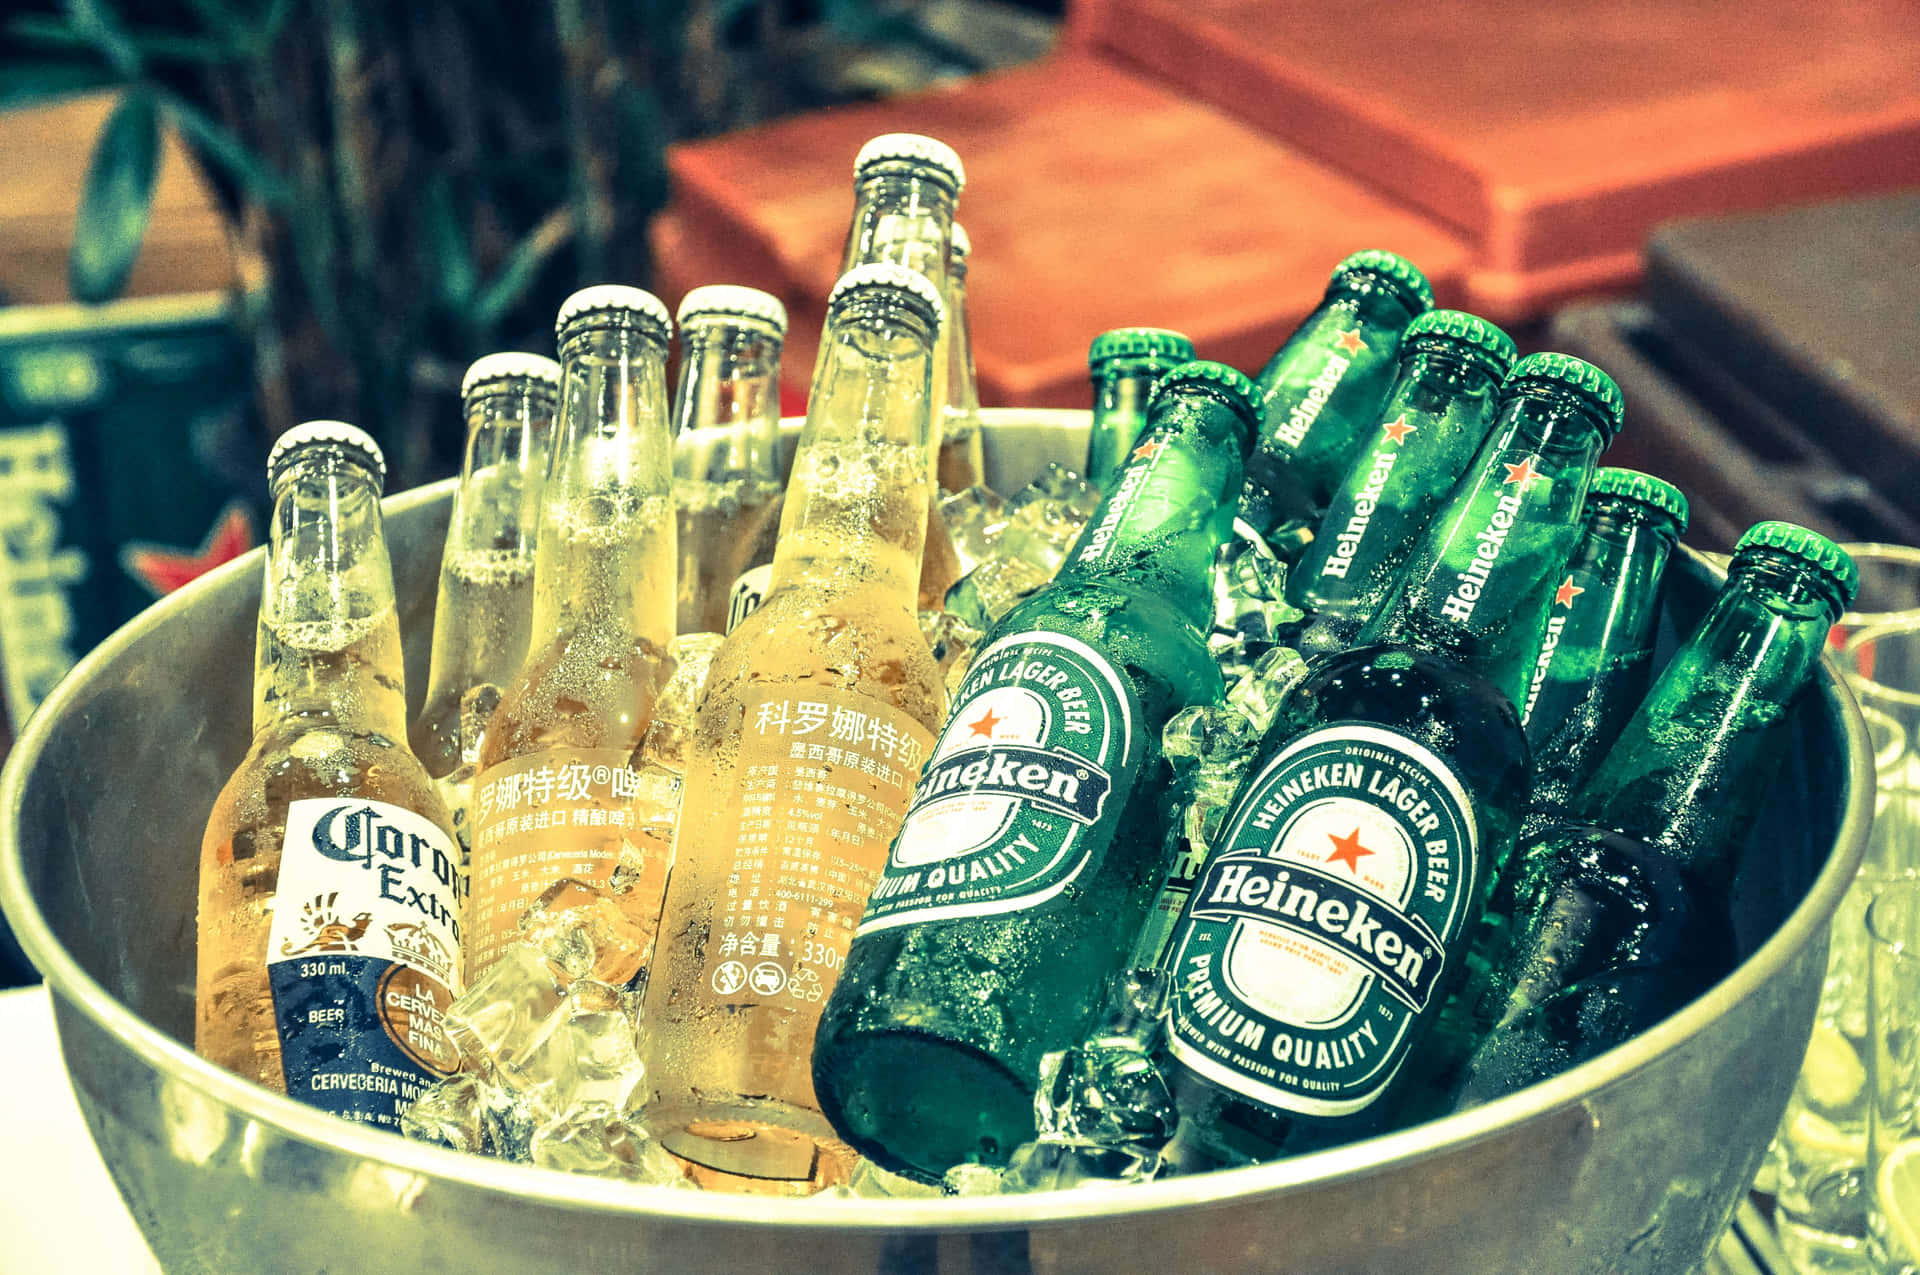 Heineken’s Cool, Refreshing Beer on a Luxurious Lounge